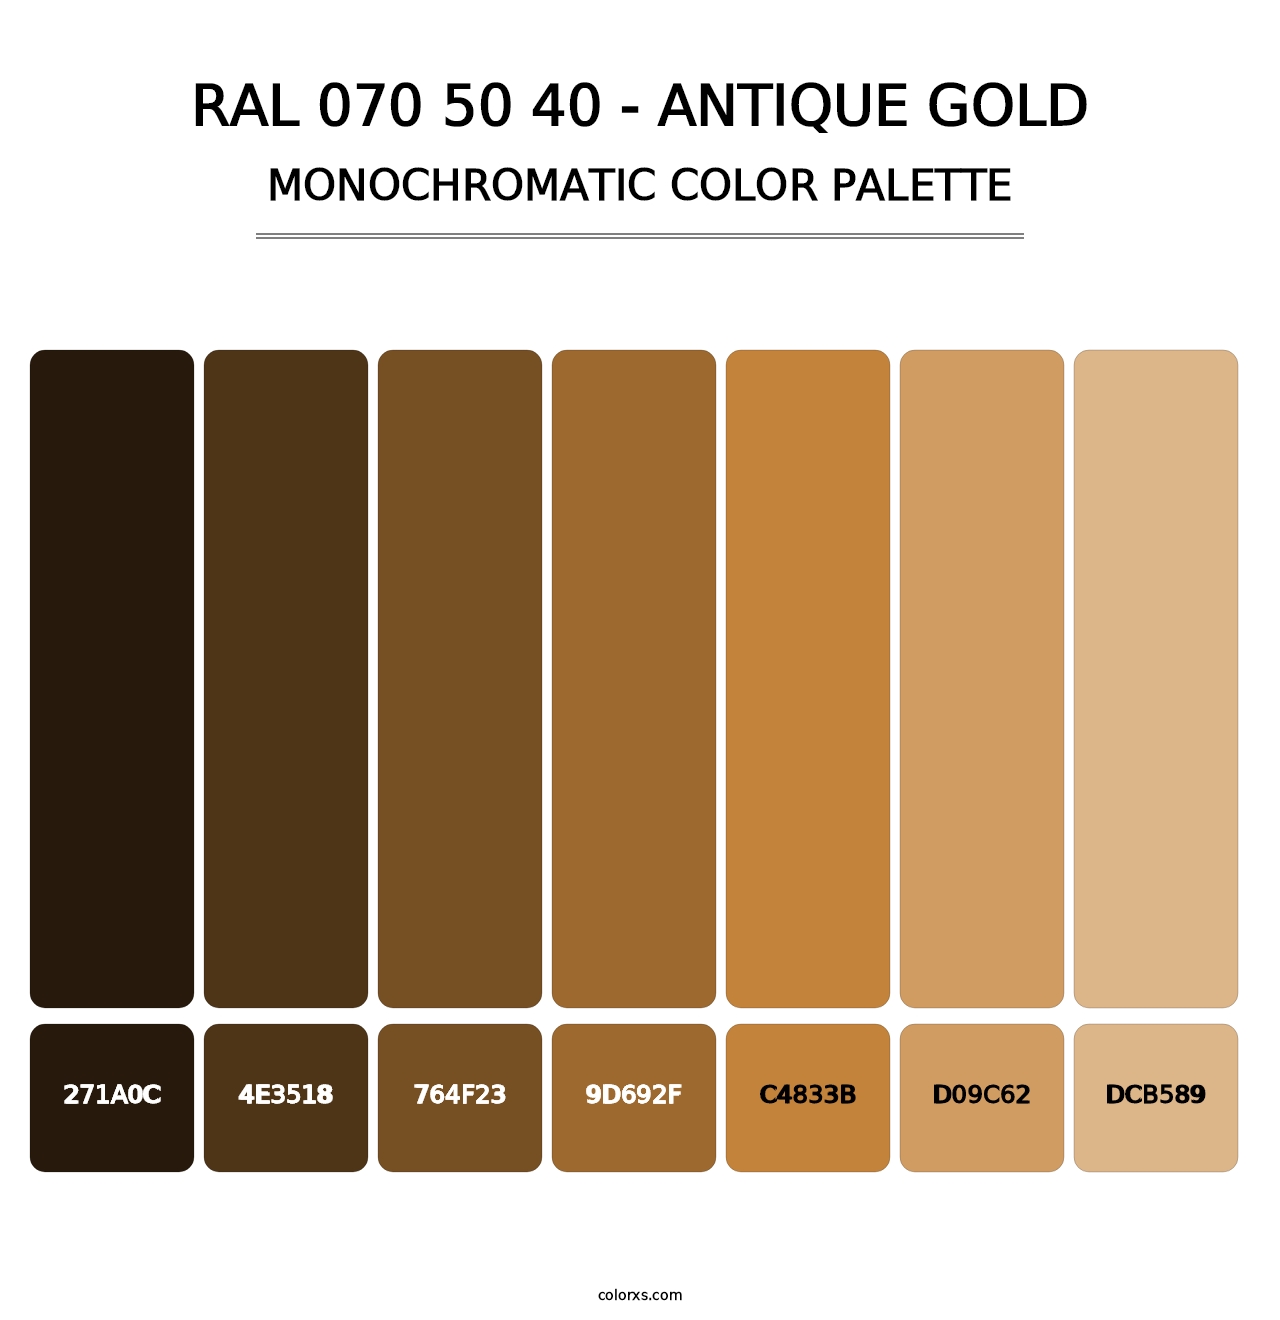 RAL 070 50 40 - Antique Gold - Monochromatic Color Palette